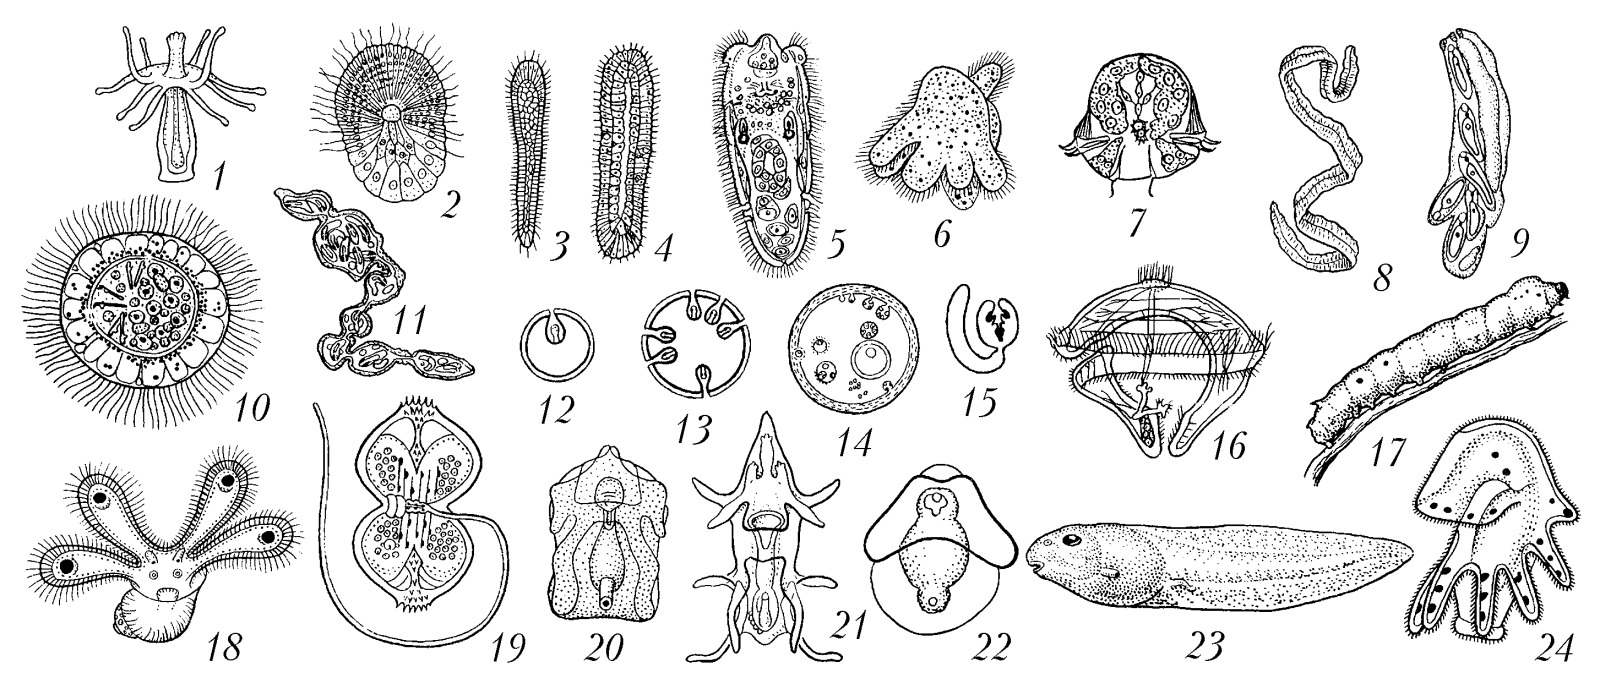 Личинки беспозвоночных животных таблица